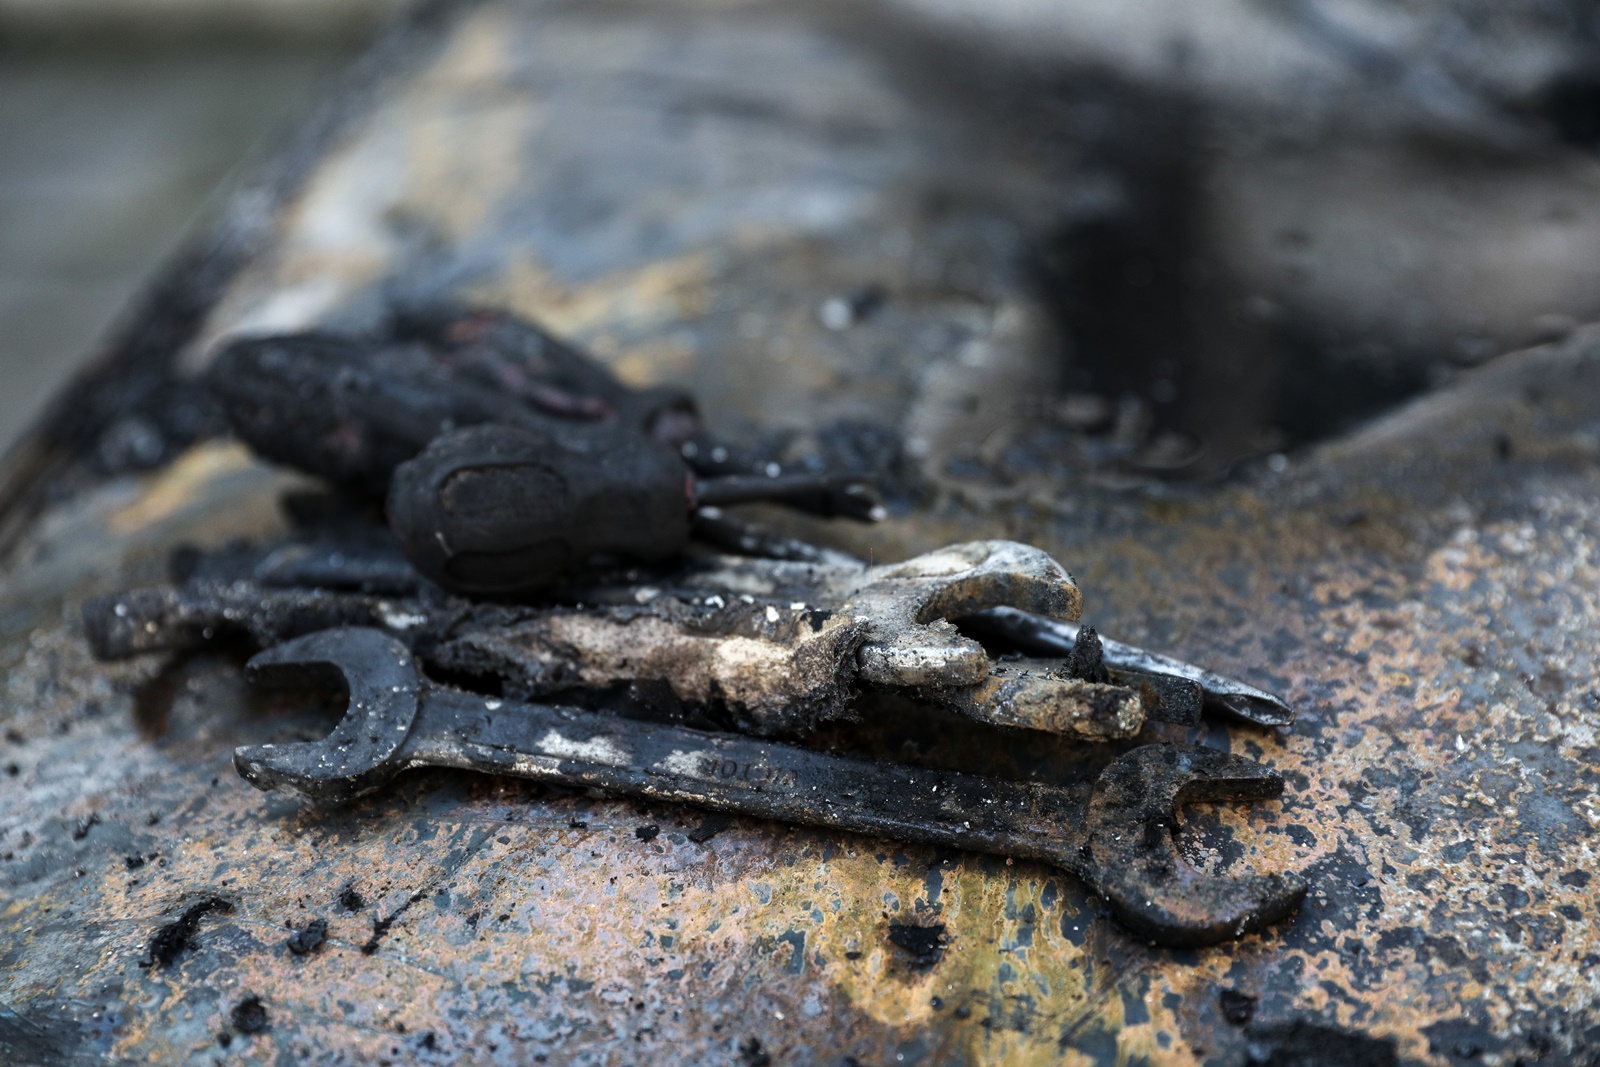 Ηλιούπολη εμπρησμός: Έκαψαν το ΙΧ του αστυνομικού που εξέδιδε την 19χρονη